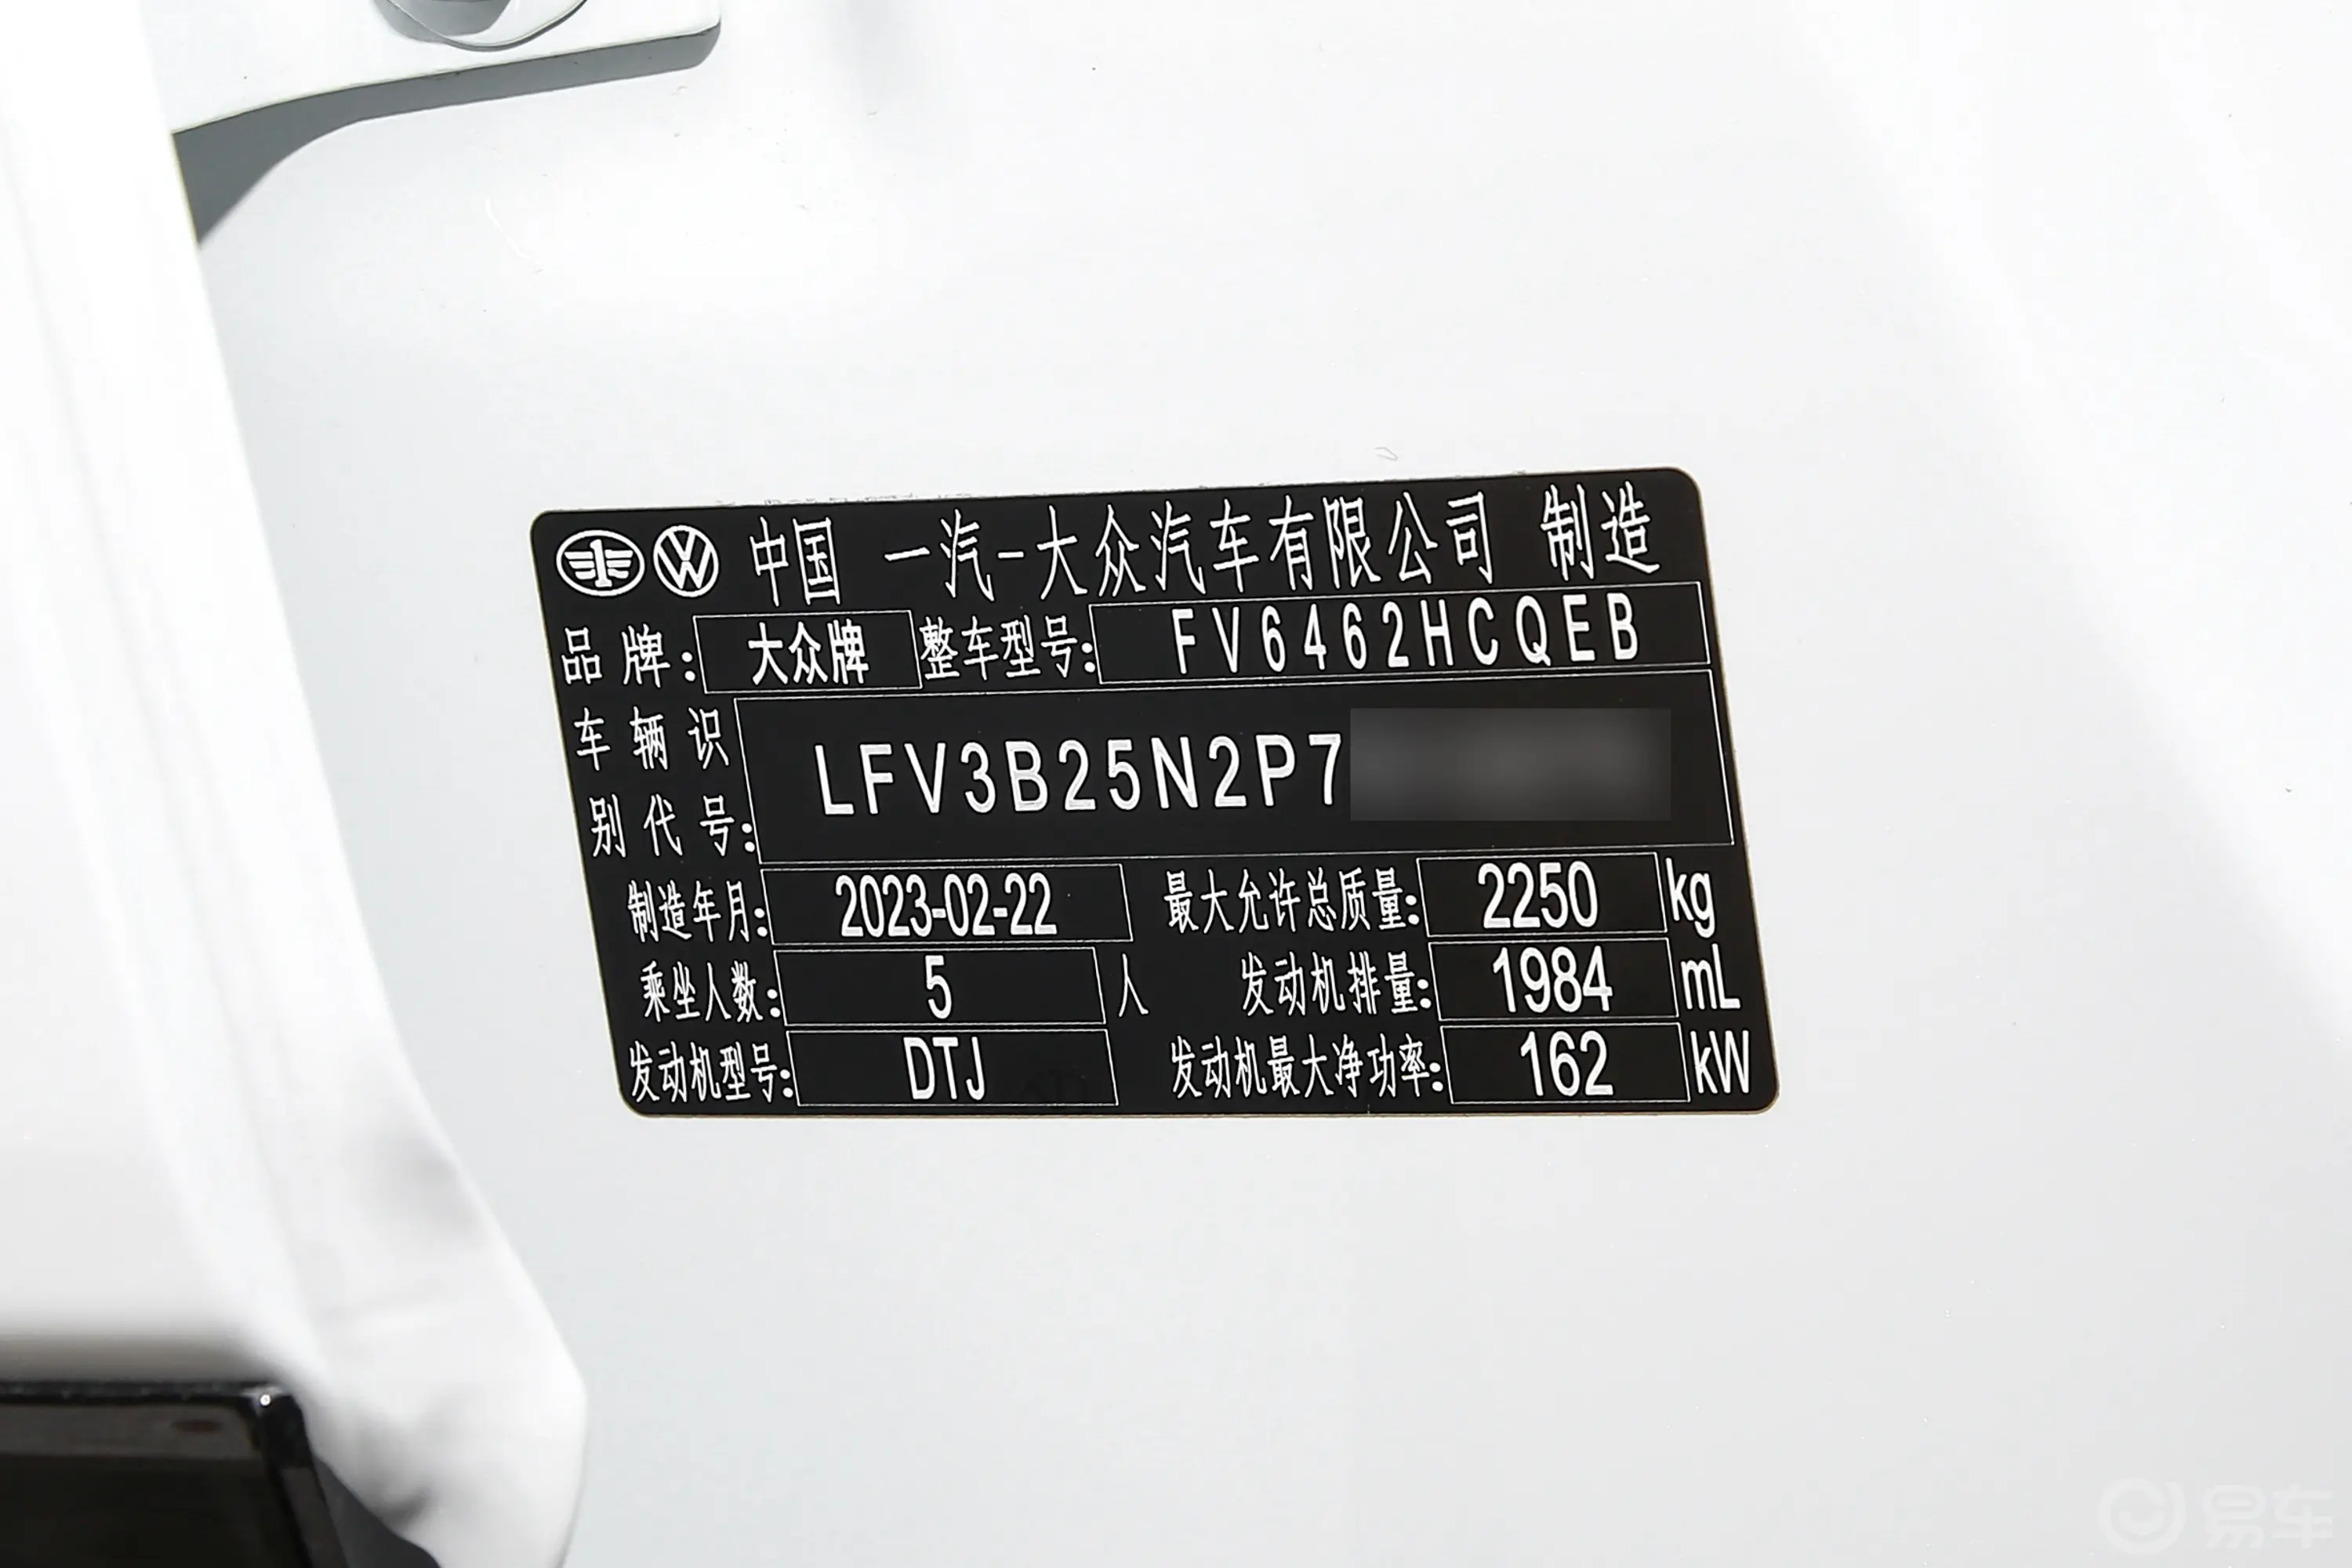 探岳改款 380TSI 四驱R-Line高能版车辆信息铭牌